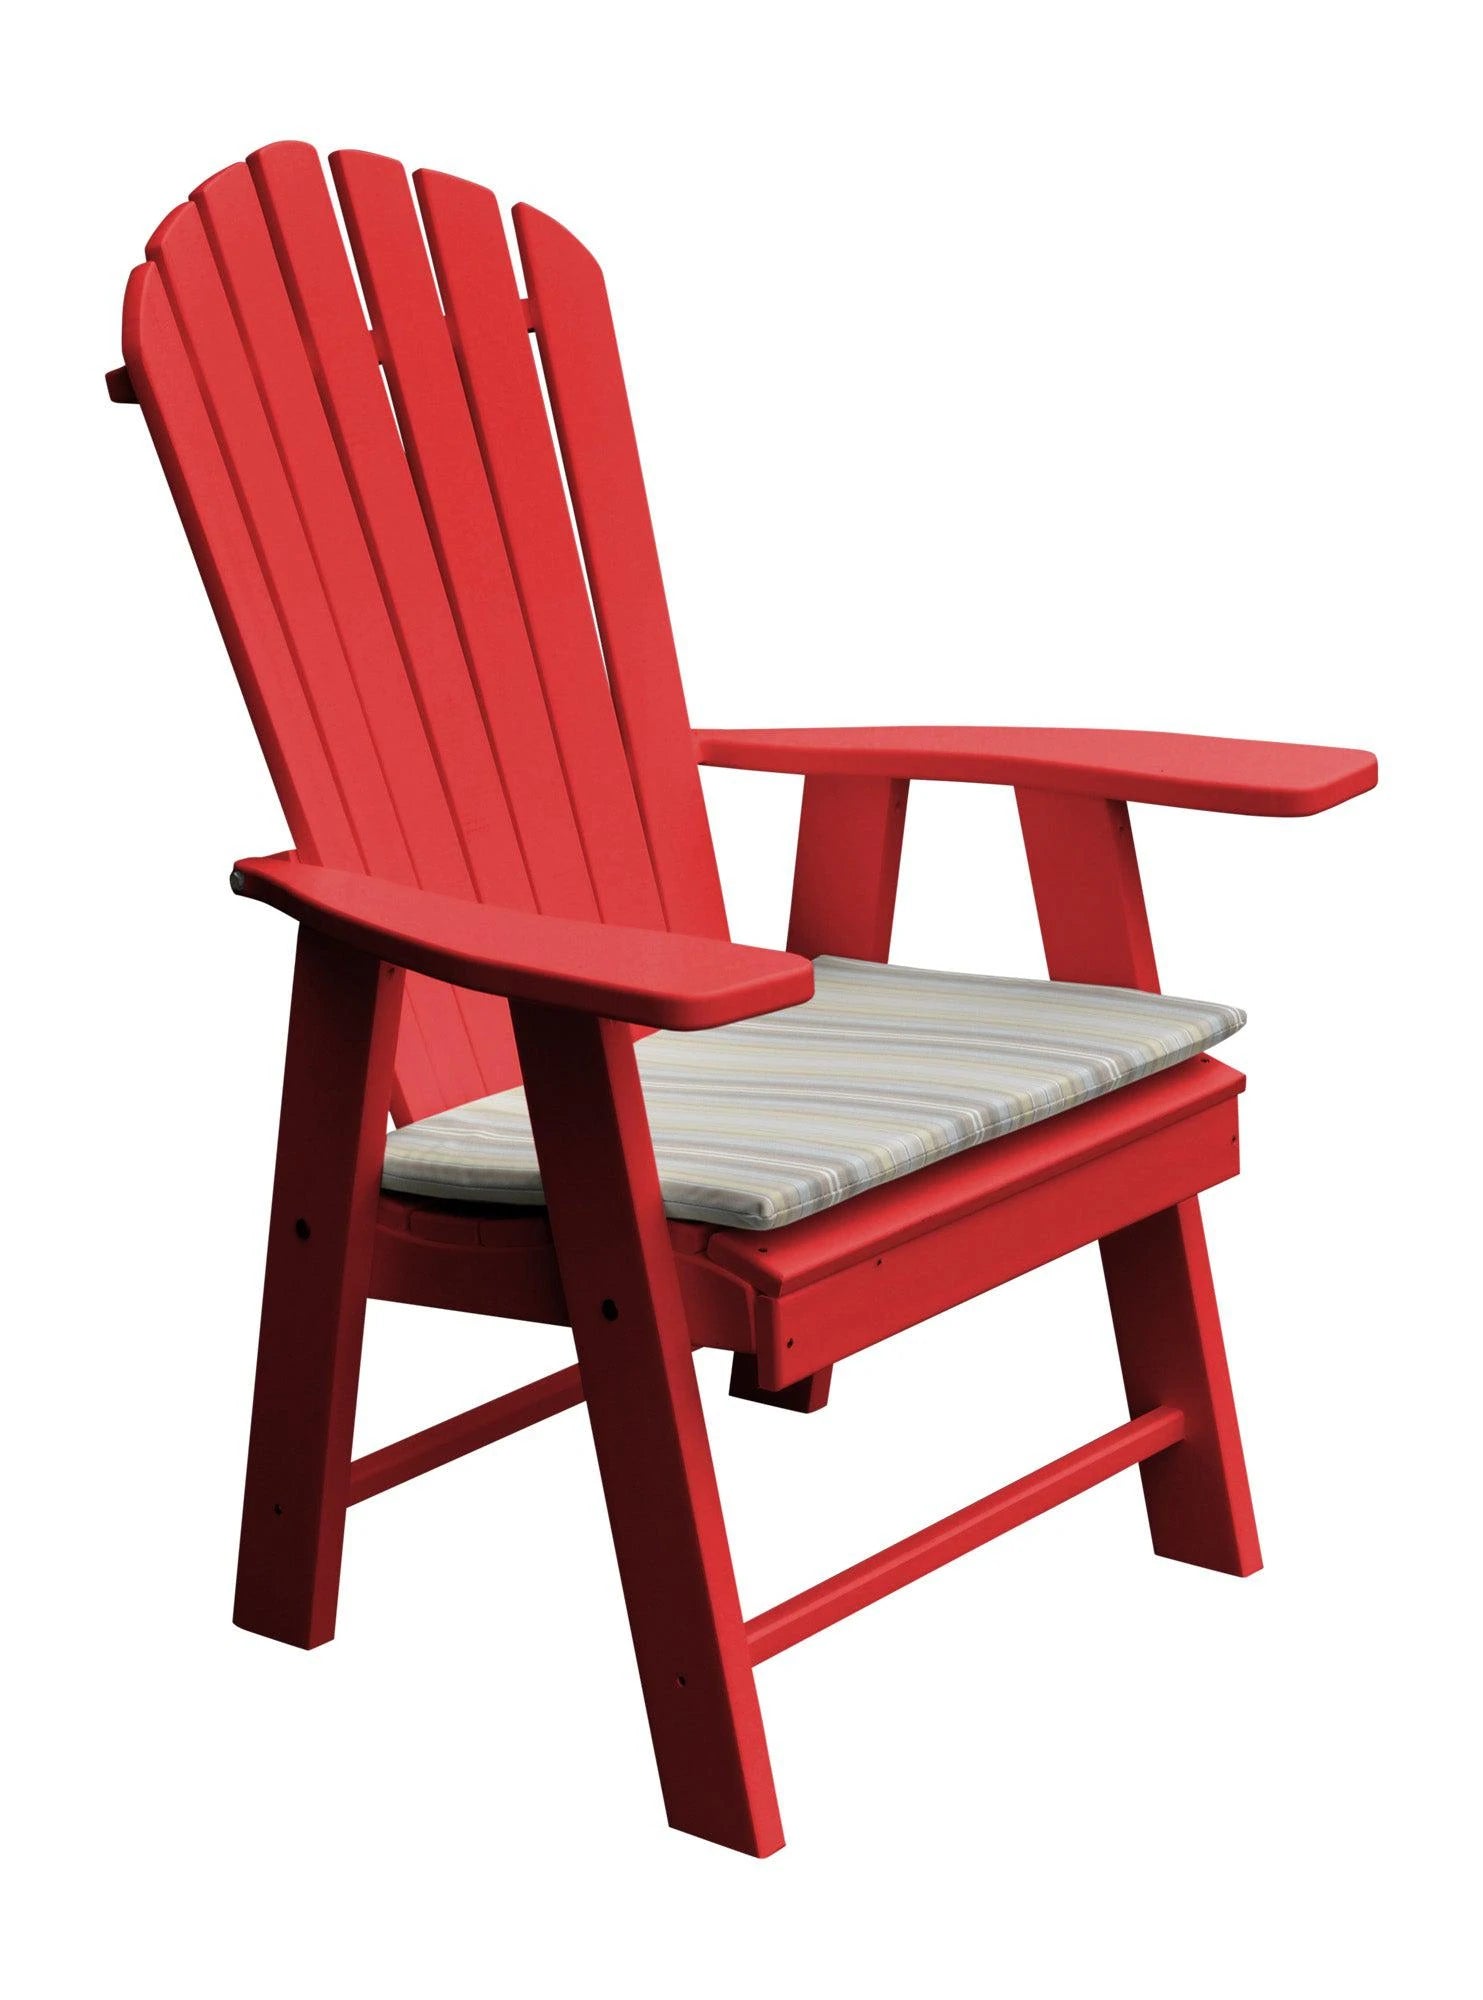 A&L Furniture Upright Adirondack Chair